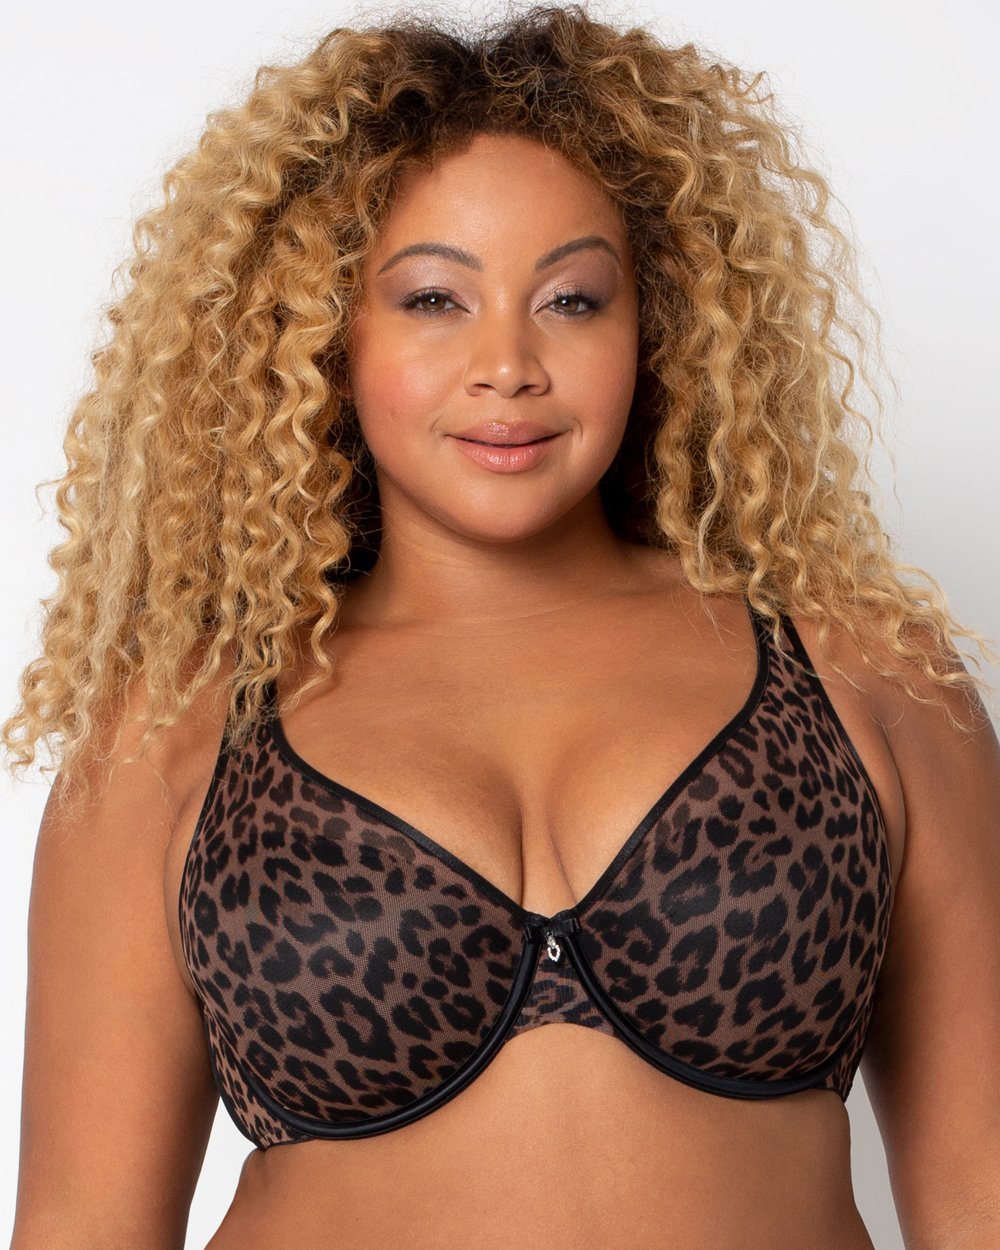 Shop All Bras: Plus Size Full Figure Bras for Curvy Women